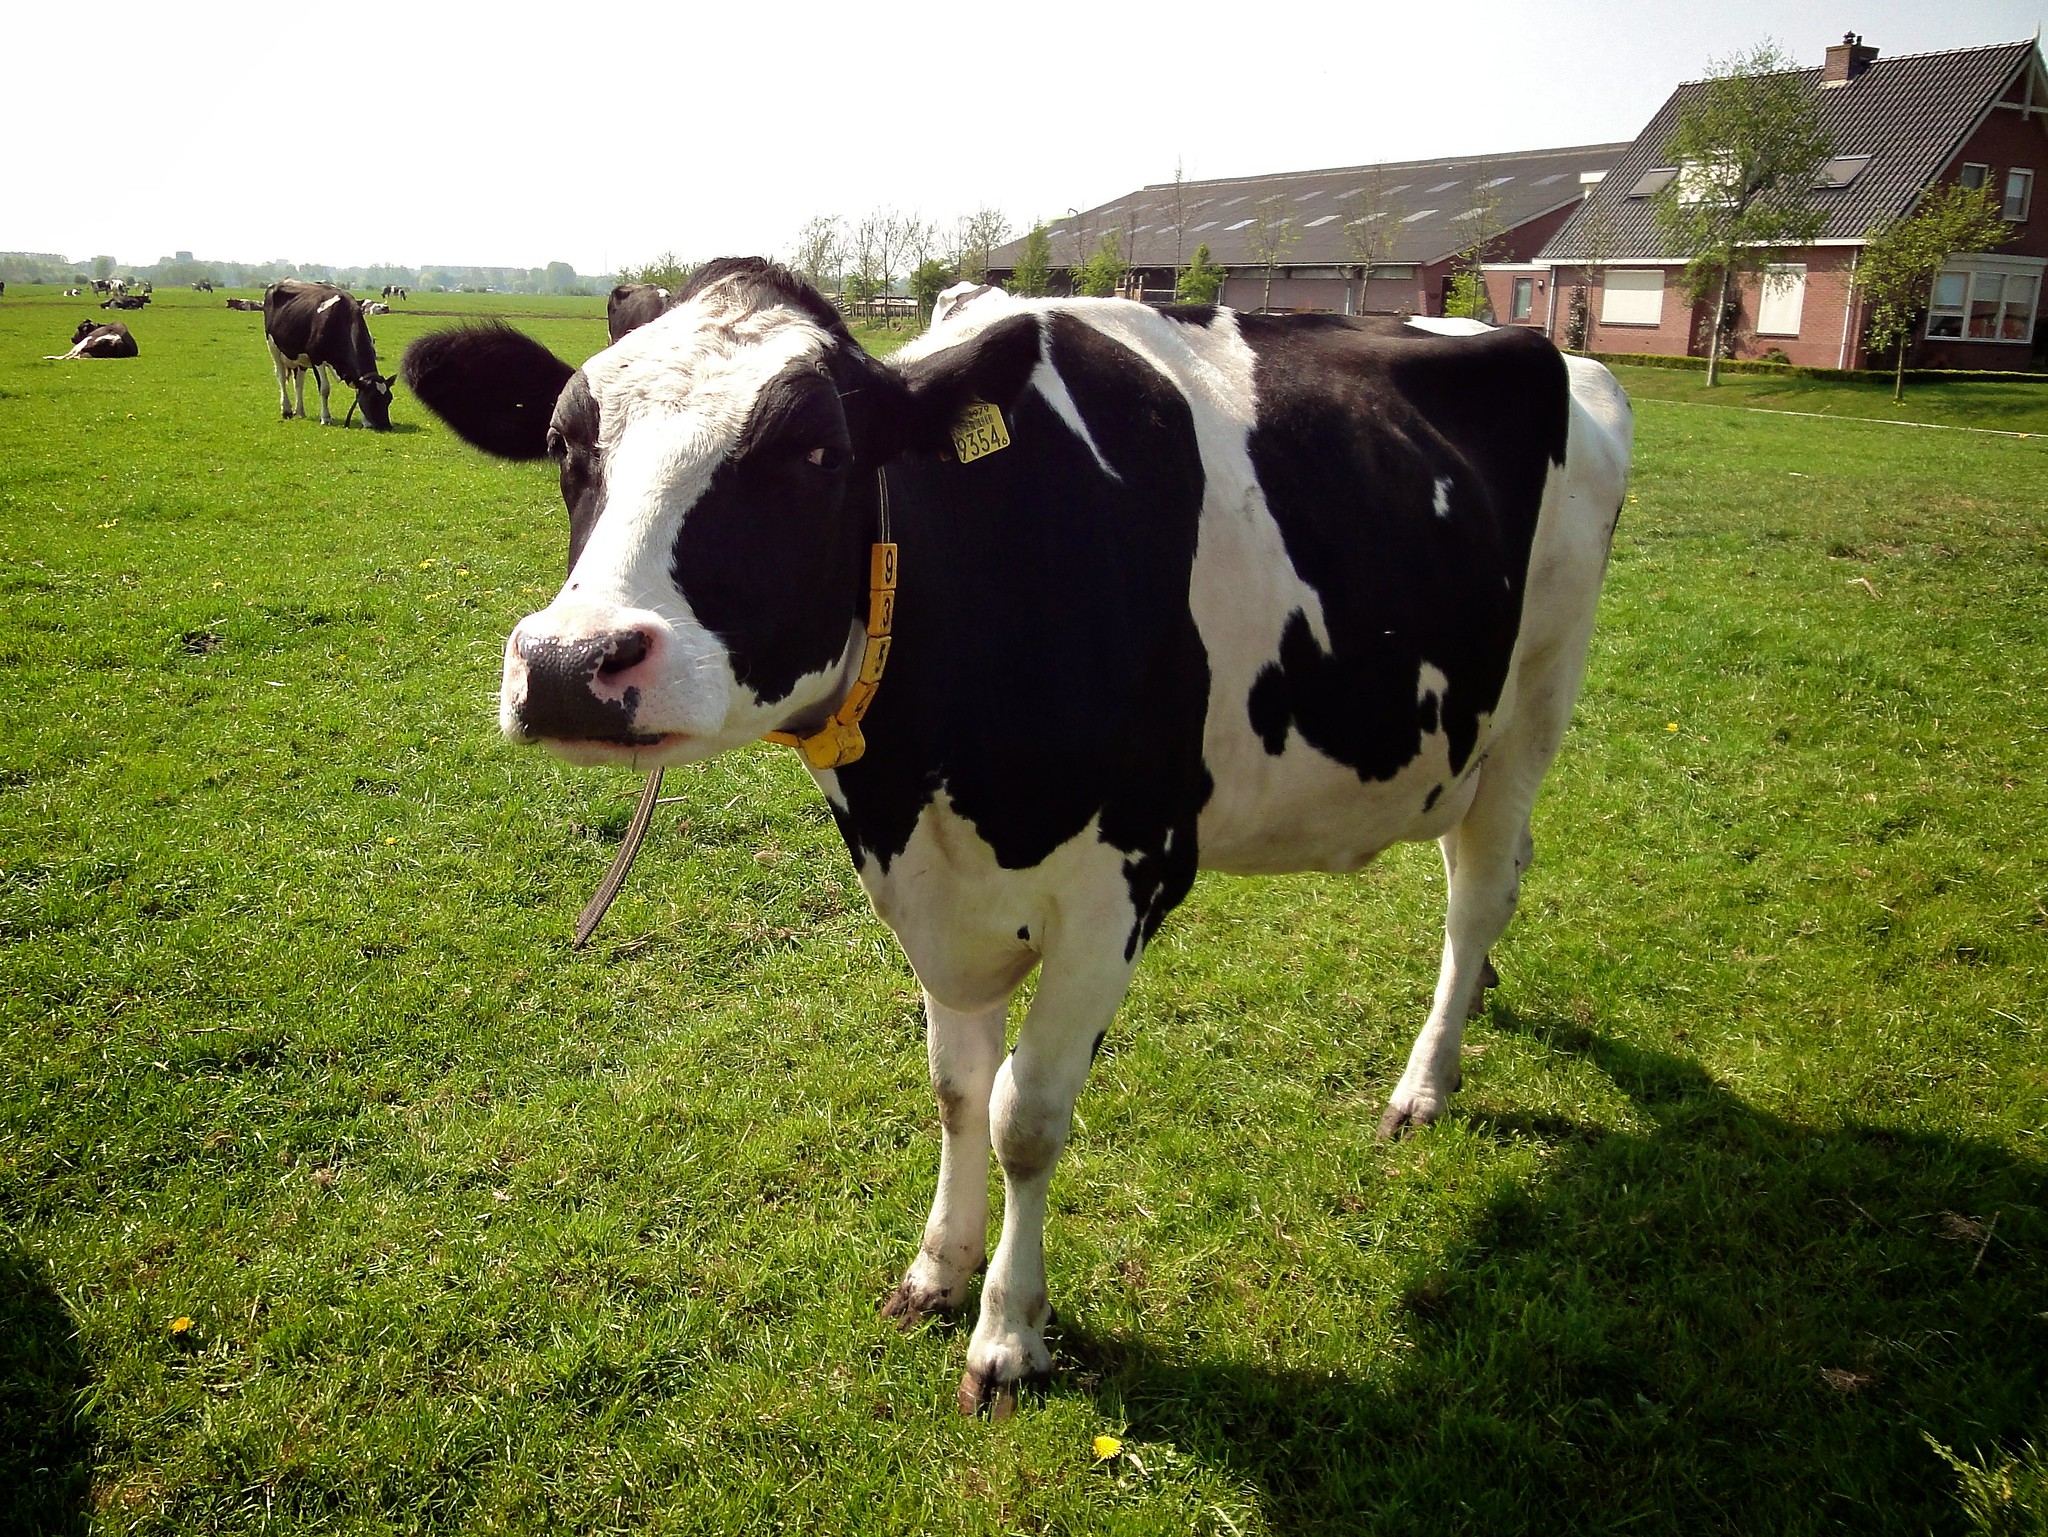 Les vaches laitières de race Holstein ont des taches noires qui absorbent le chaleur. © E. Dronkert, Flickr